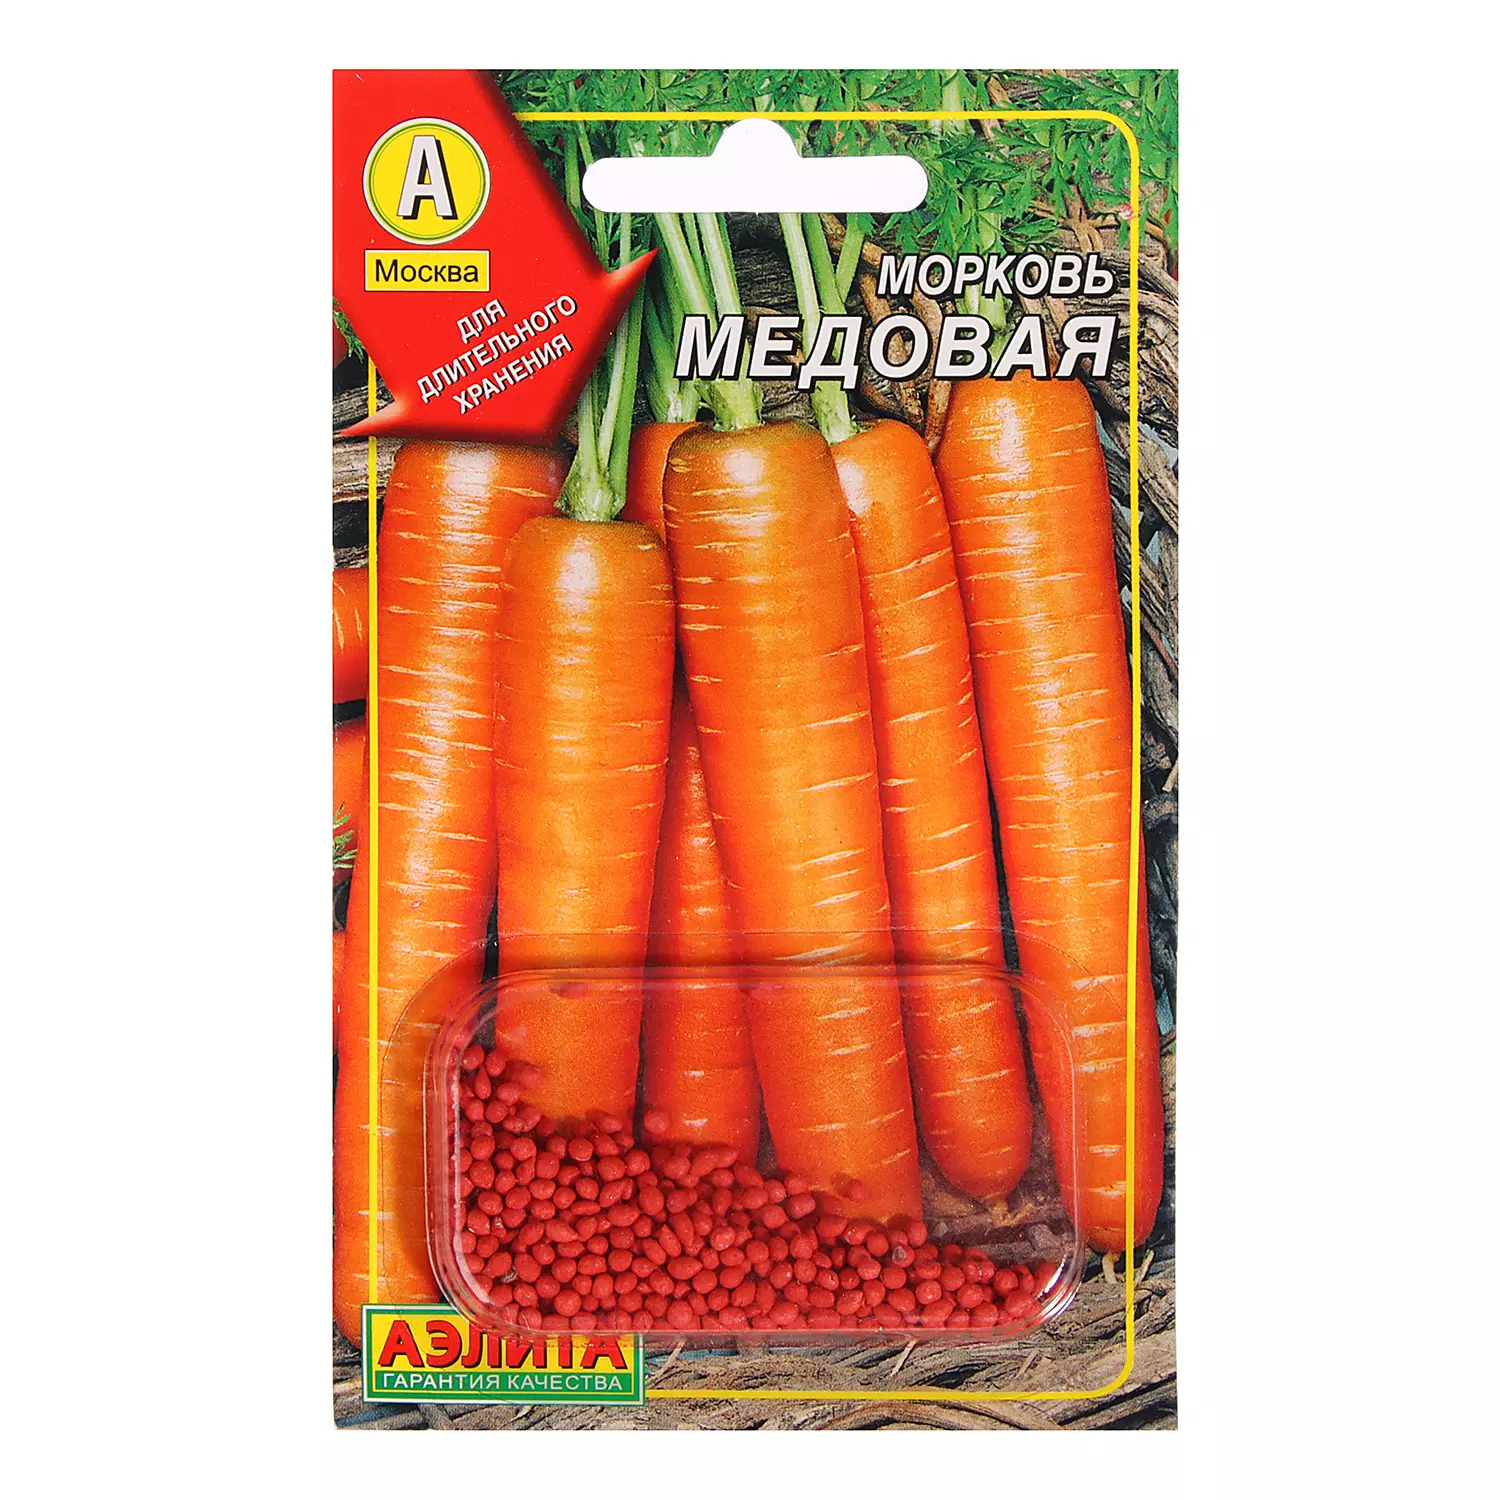 Семена Морковь Медовая АЭЛИТА драже, 300шт Др 300шт